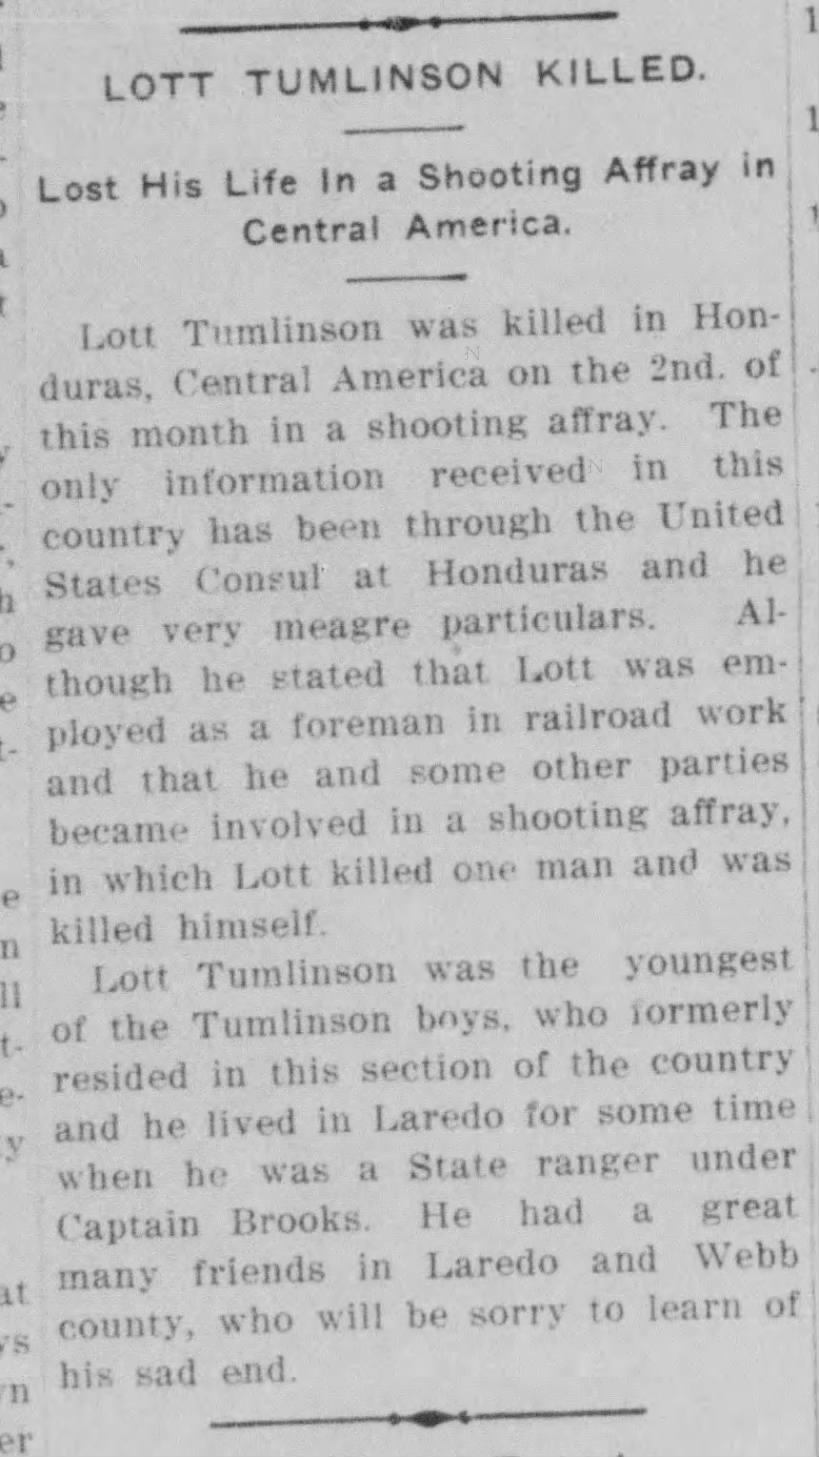 Laredo Weekly Times
Laredo, Texas
Sunday, October 29, 1911
Page 1 (Column 3)